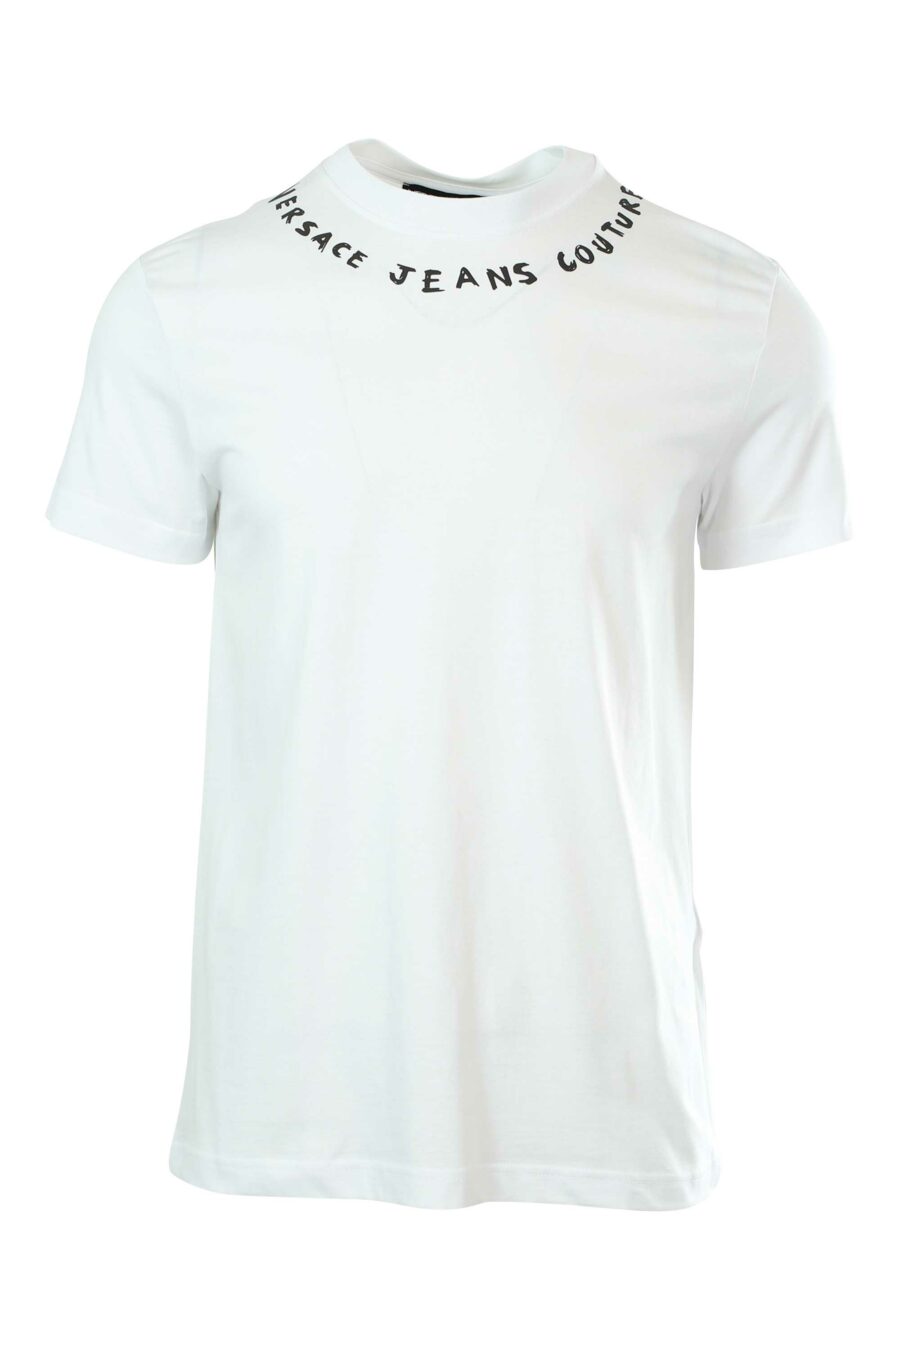 Weißes T-Shirt mit Logo am Kragen - 8052019237092